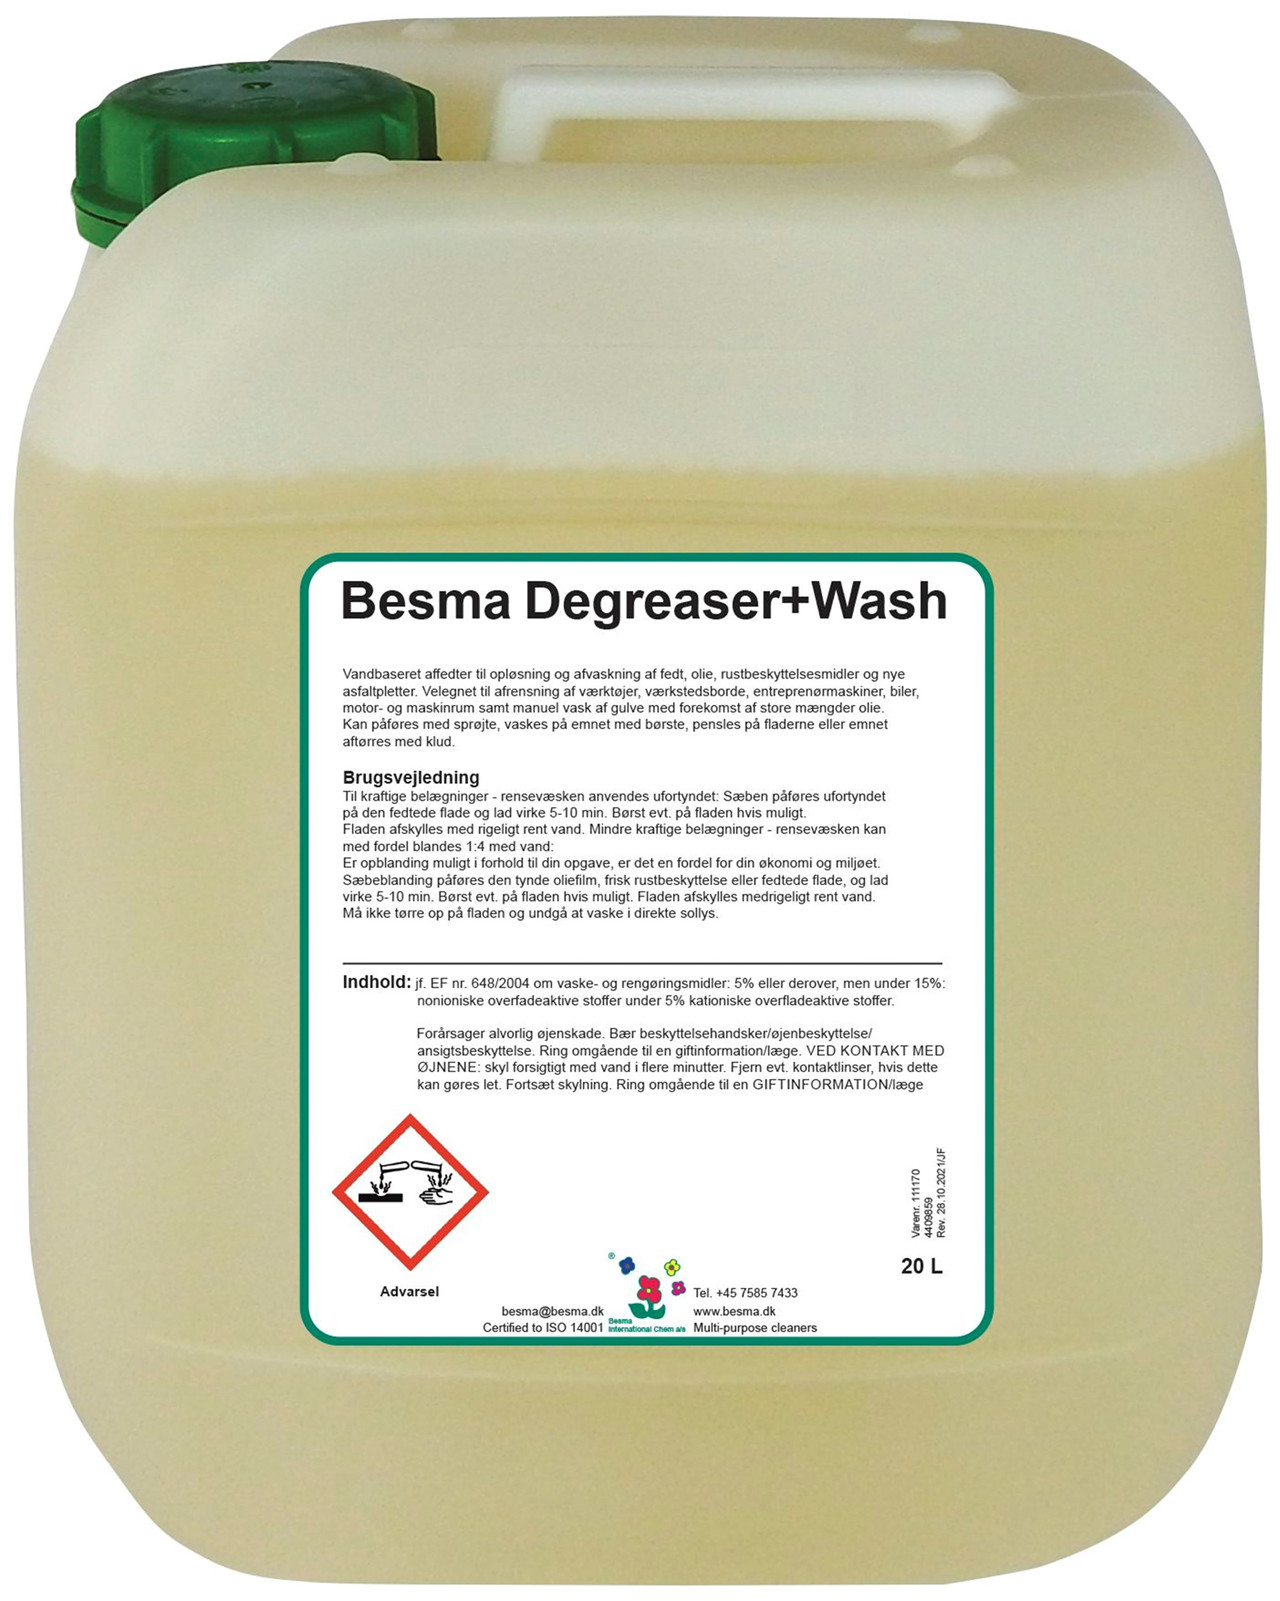 Se Besma Degreaser+Wash 1 L hos Specialbutikken